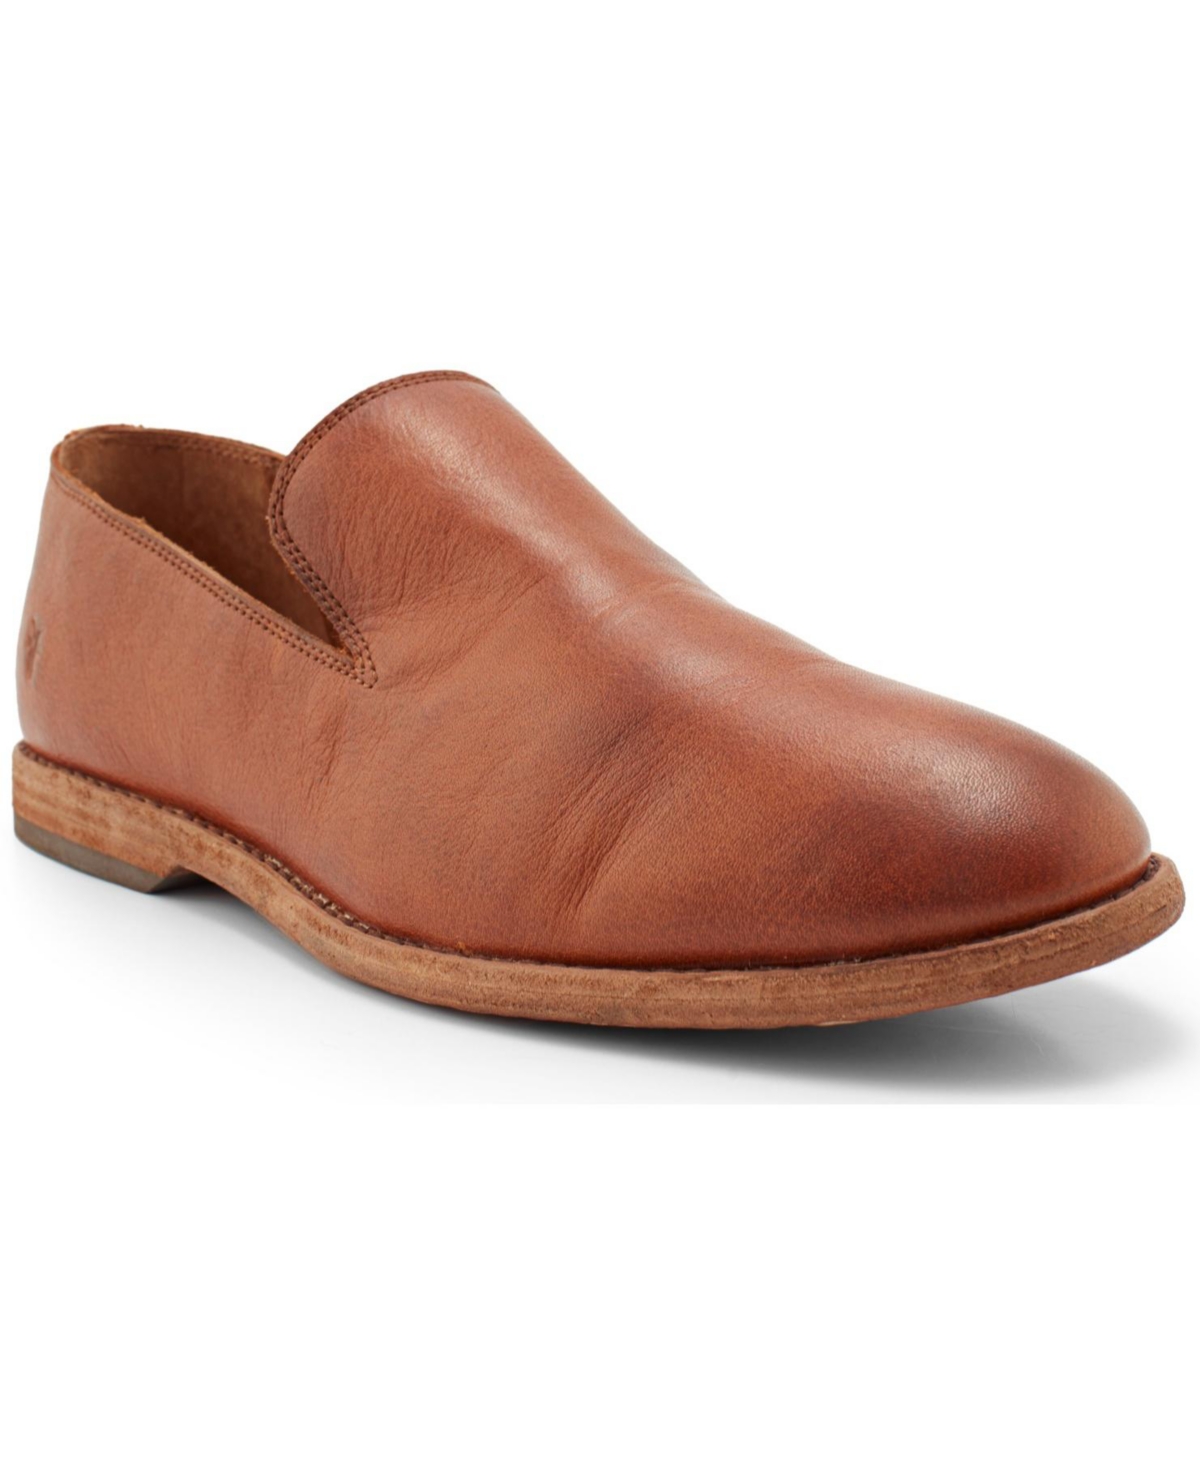 Men's Chris Venetian Slip-on Loafers - Tan Leather